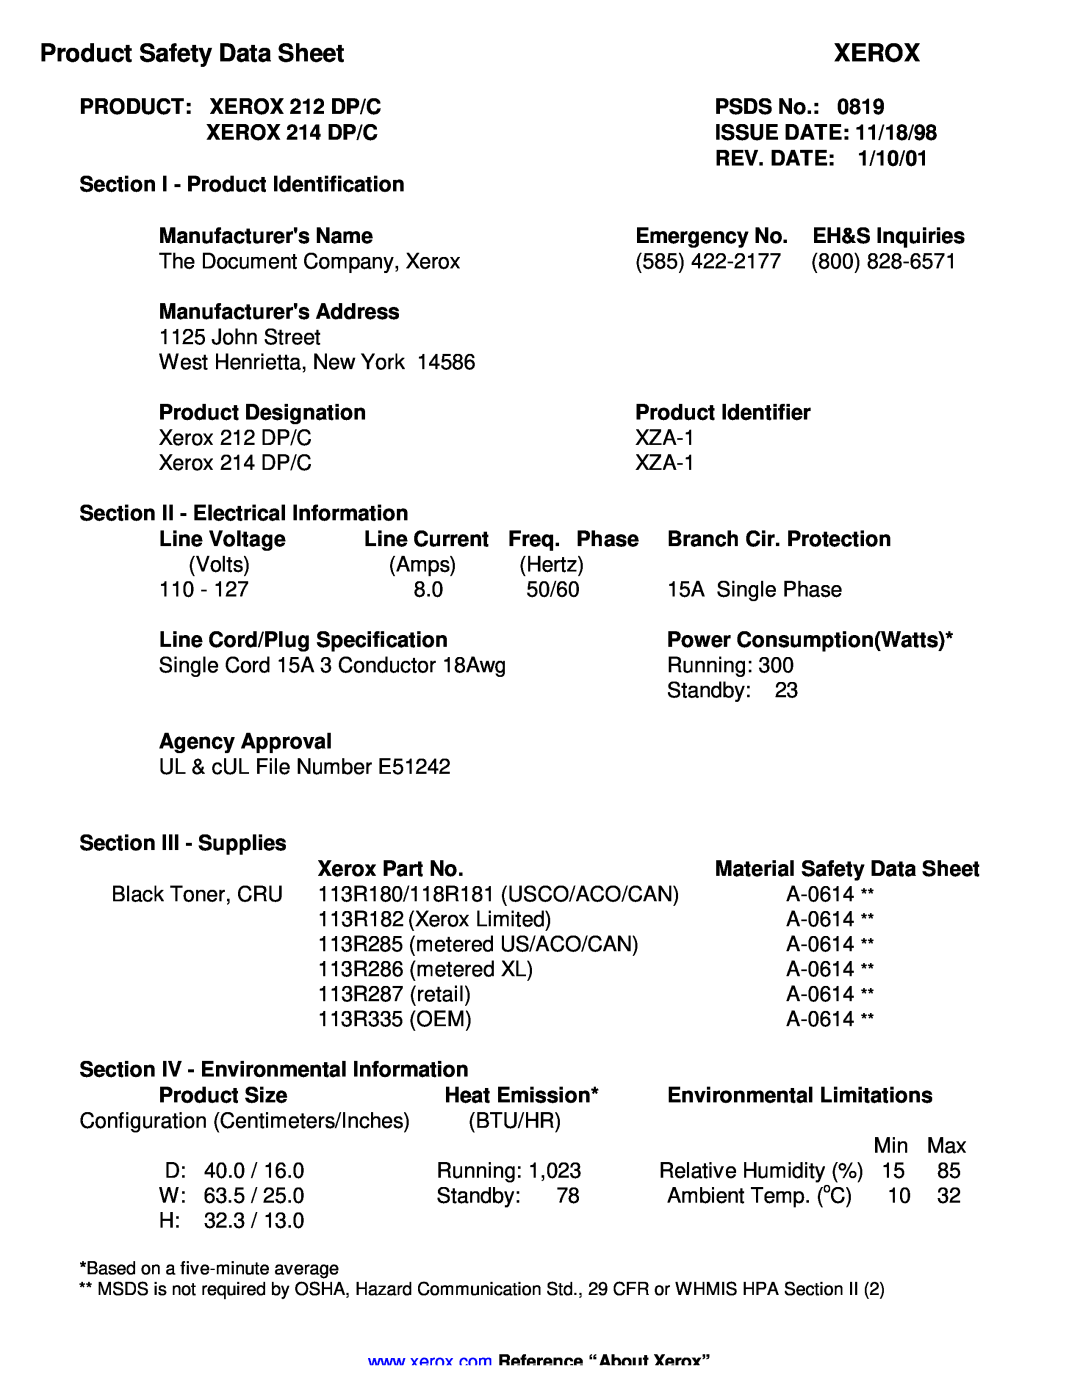 Xerox 212 DP/C, 214 DP/C manual Product Safety Data Sheet, Xerox 